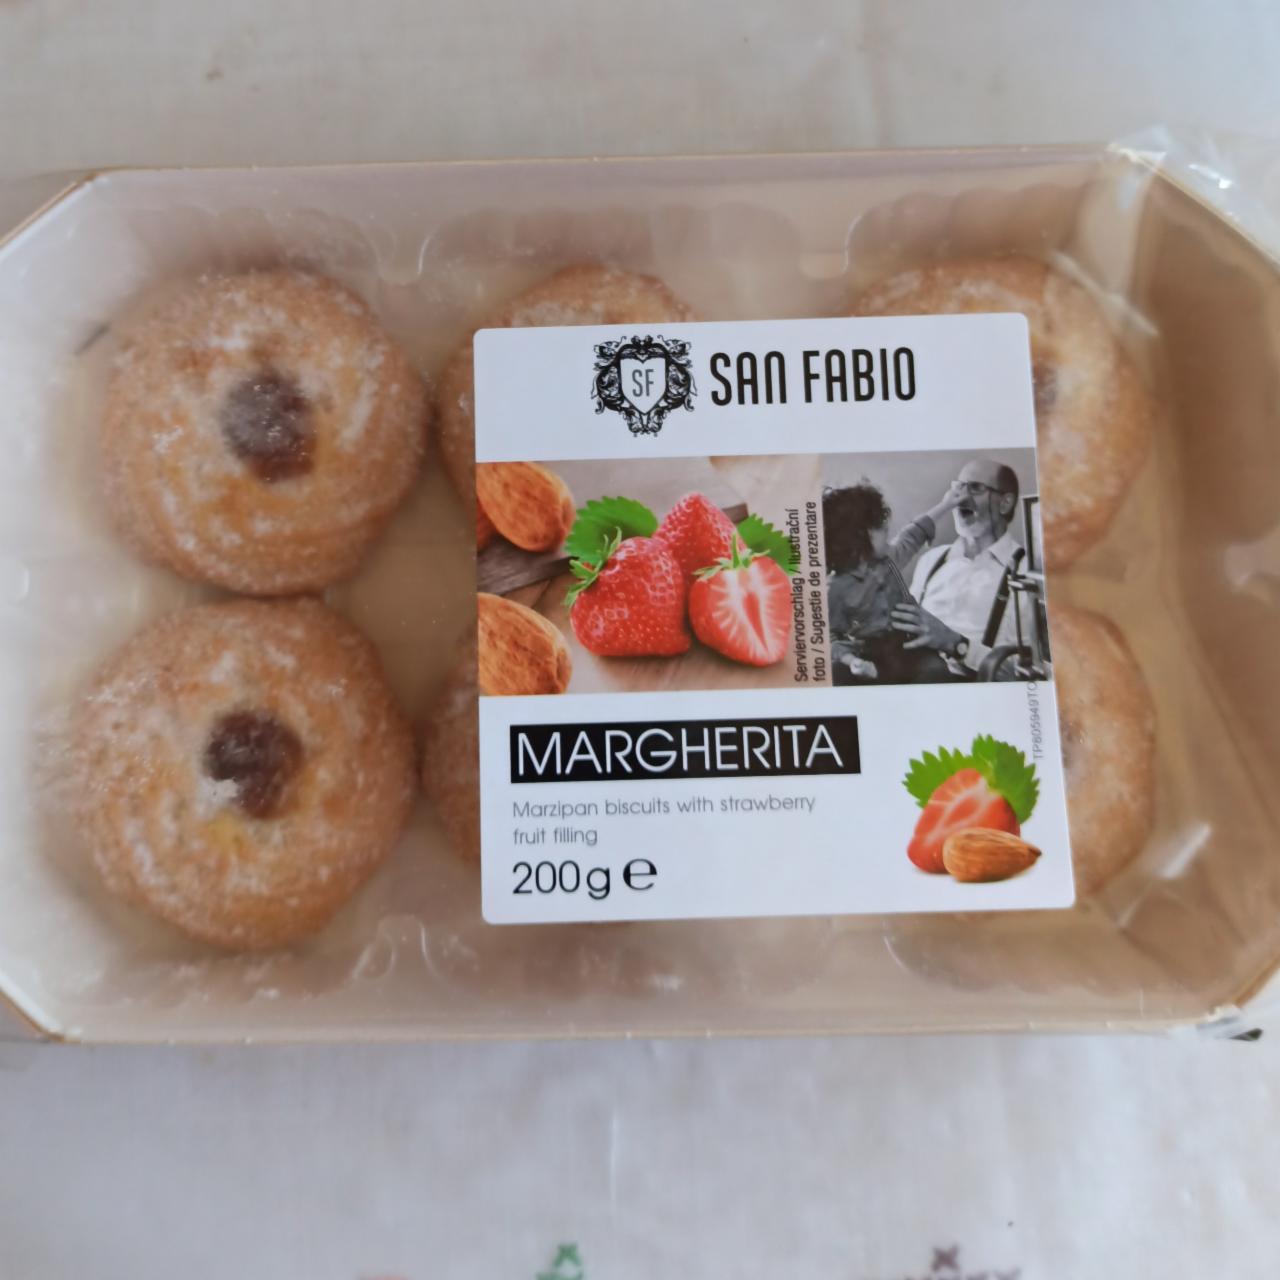 Fotografie - Margherita (jemné pečivo s marcipánem a s náplní s jahodami) San Fabio